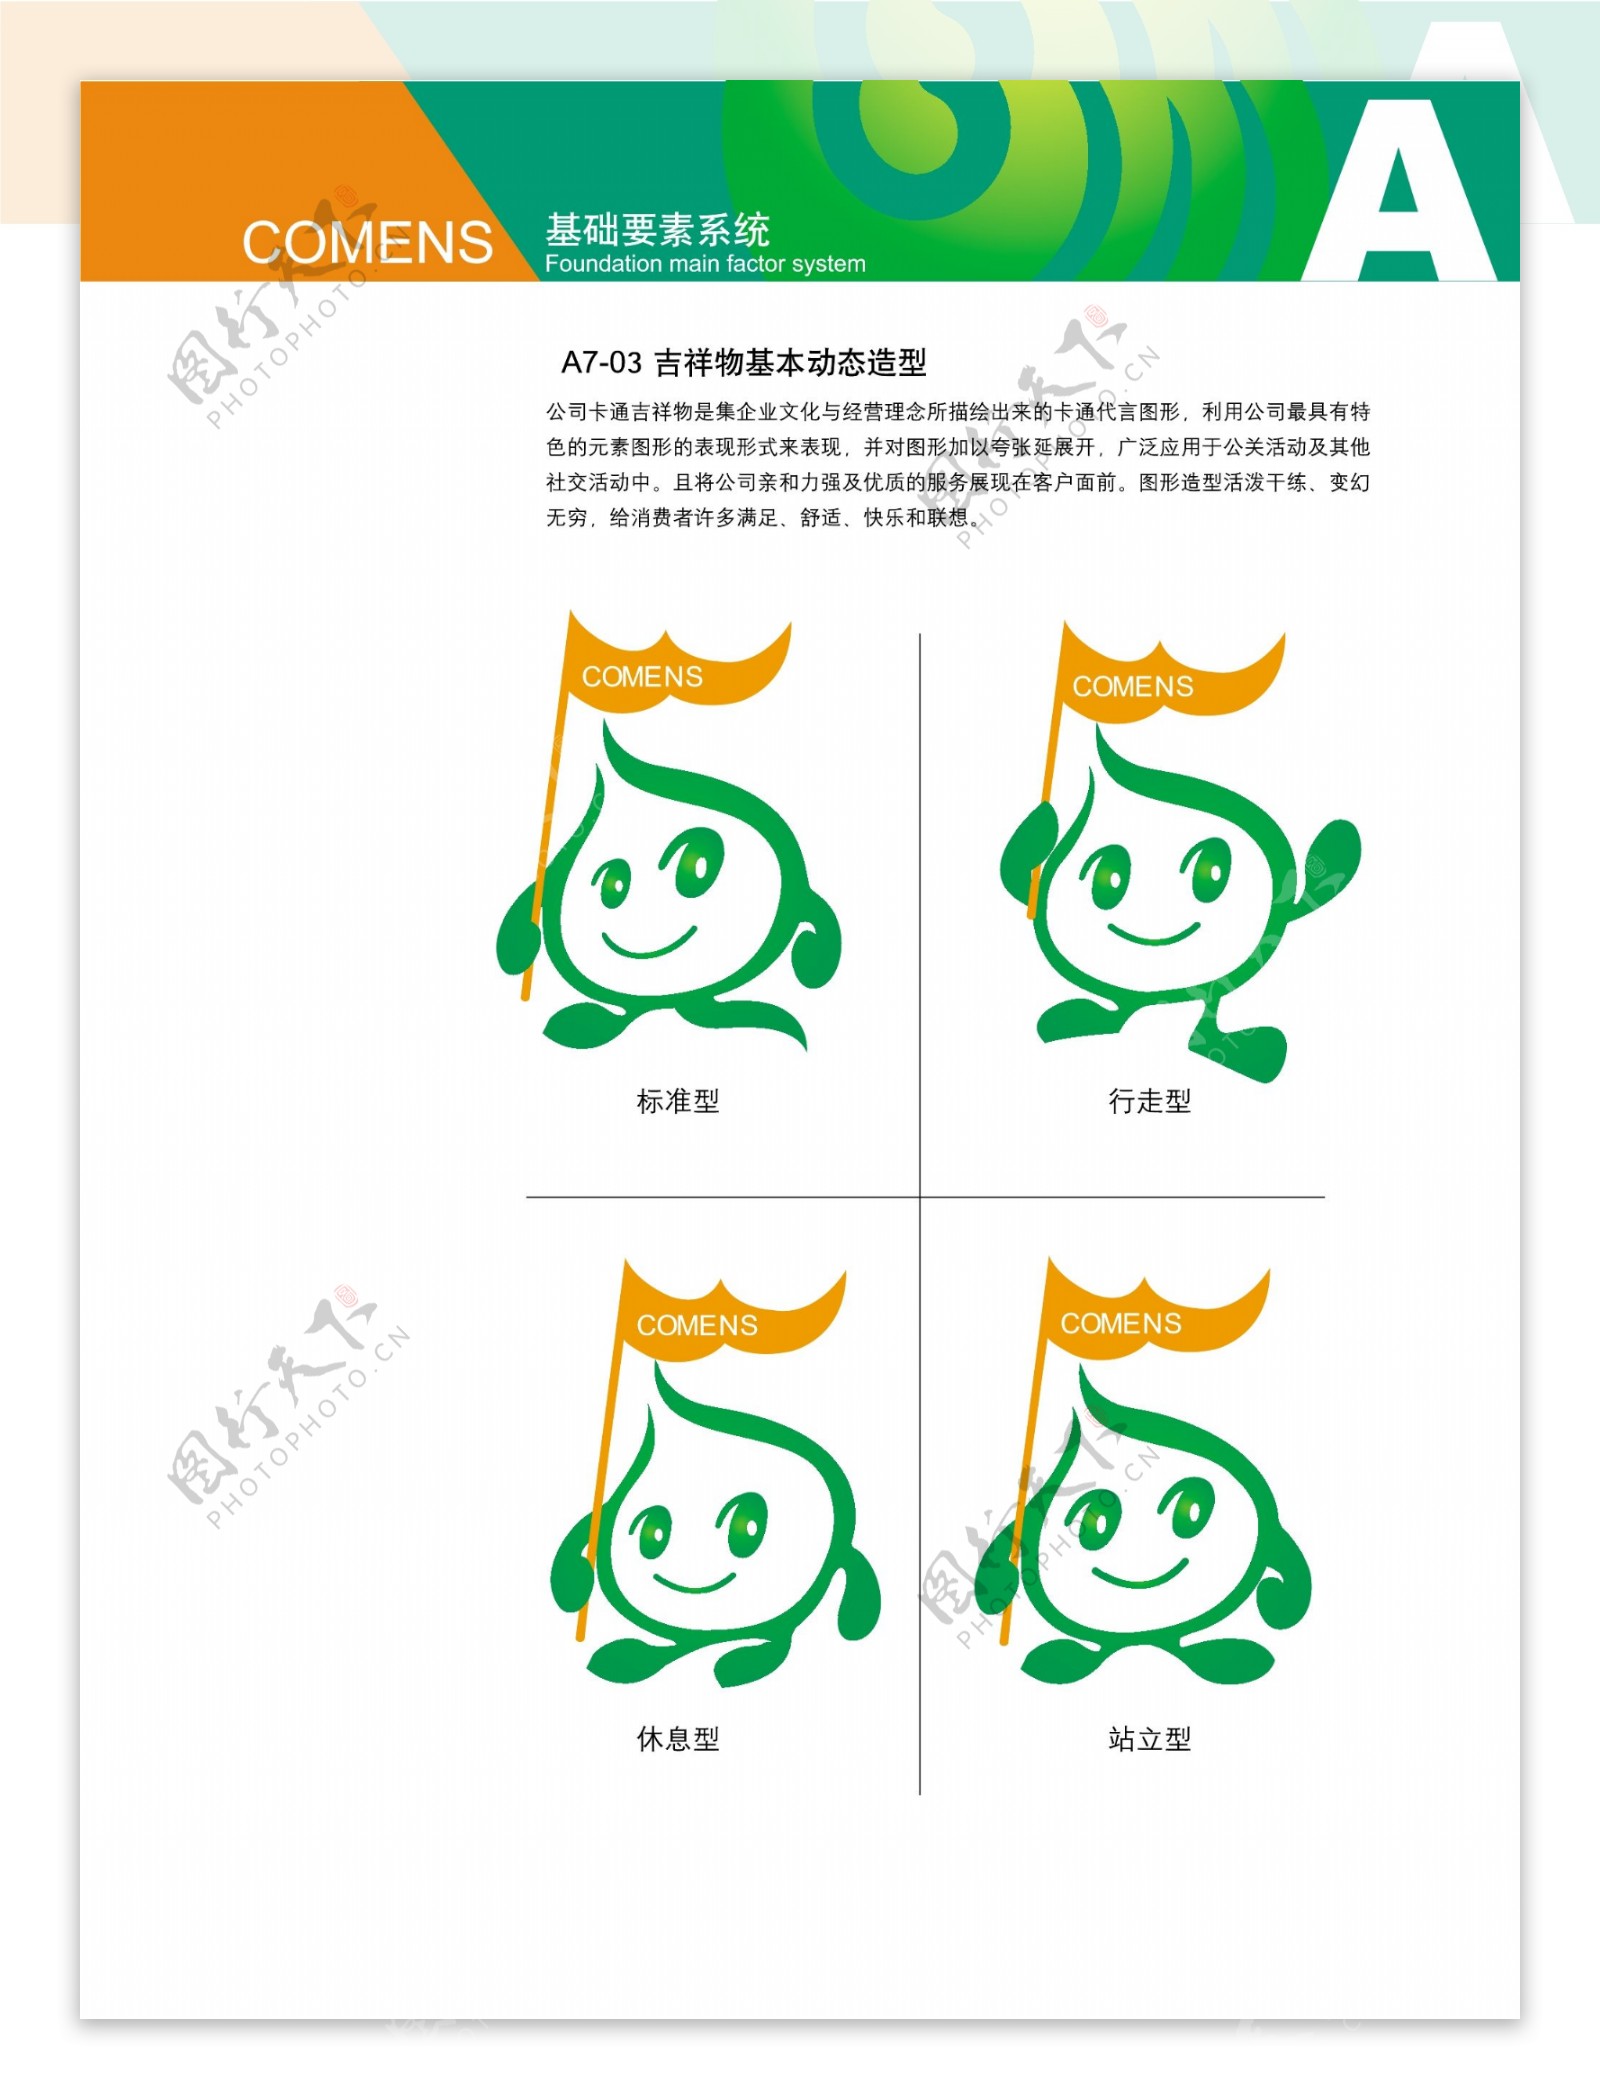 高盟VI标识系统方案吉祥物基本动态造型